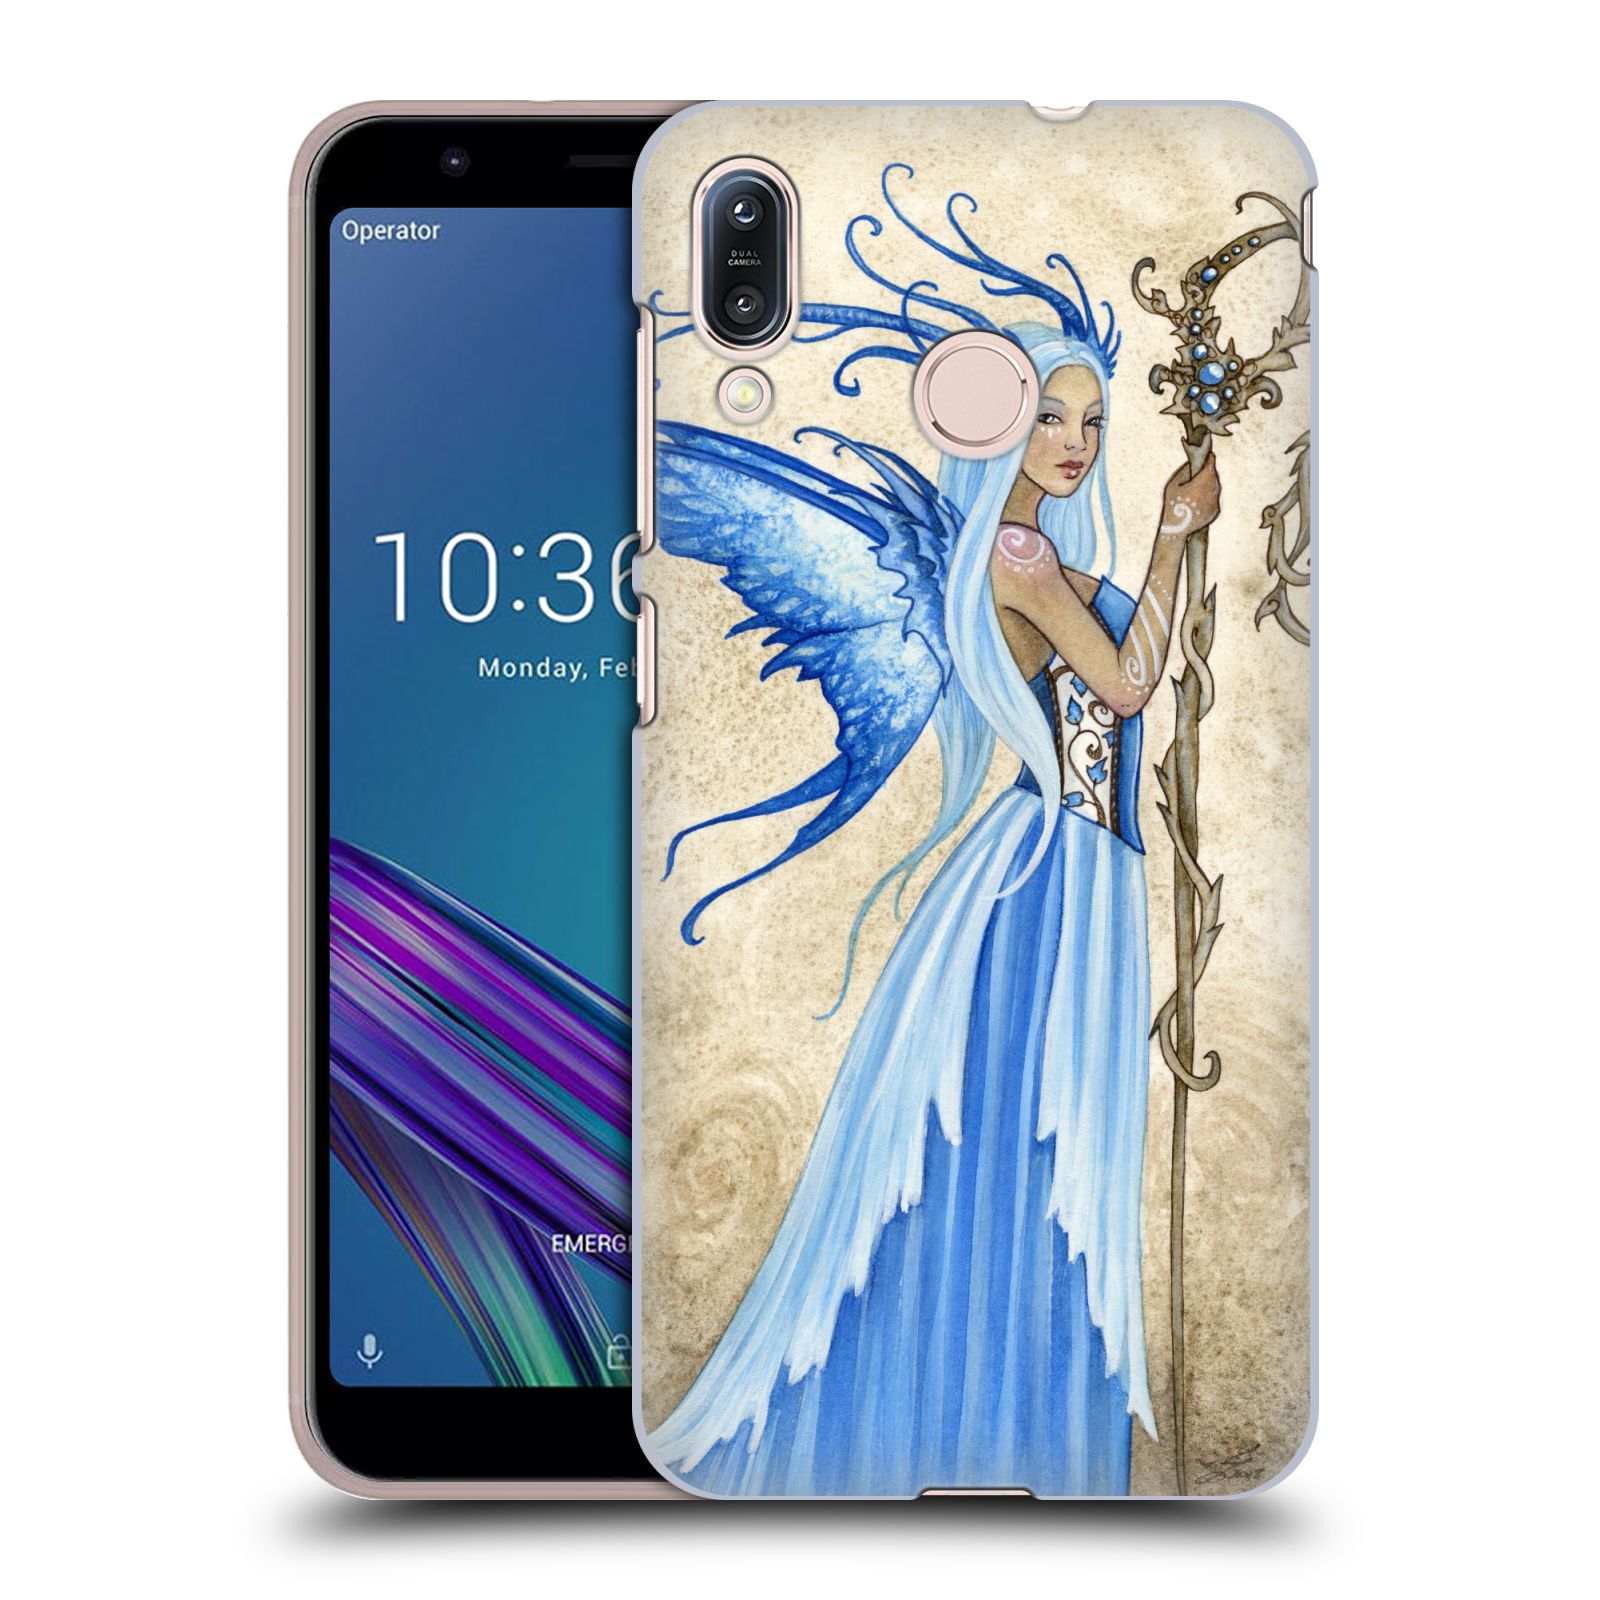 Zadní obal pro mobil Asus Zenfone Max (M1) ZB555KL - HEAD CASE - Amy Brown - modrá bohyně